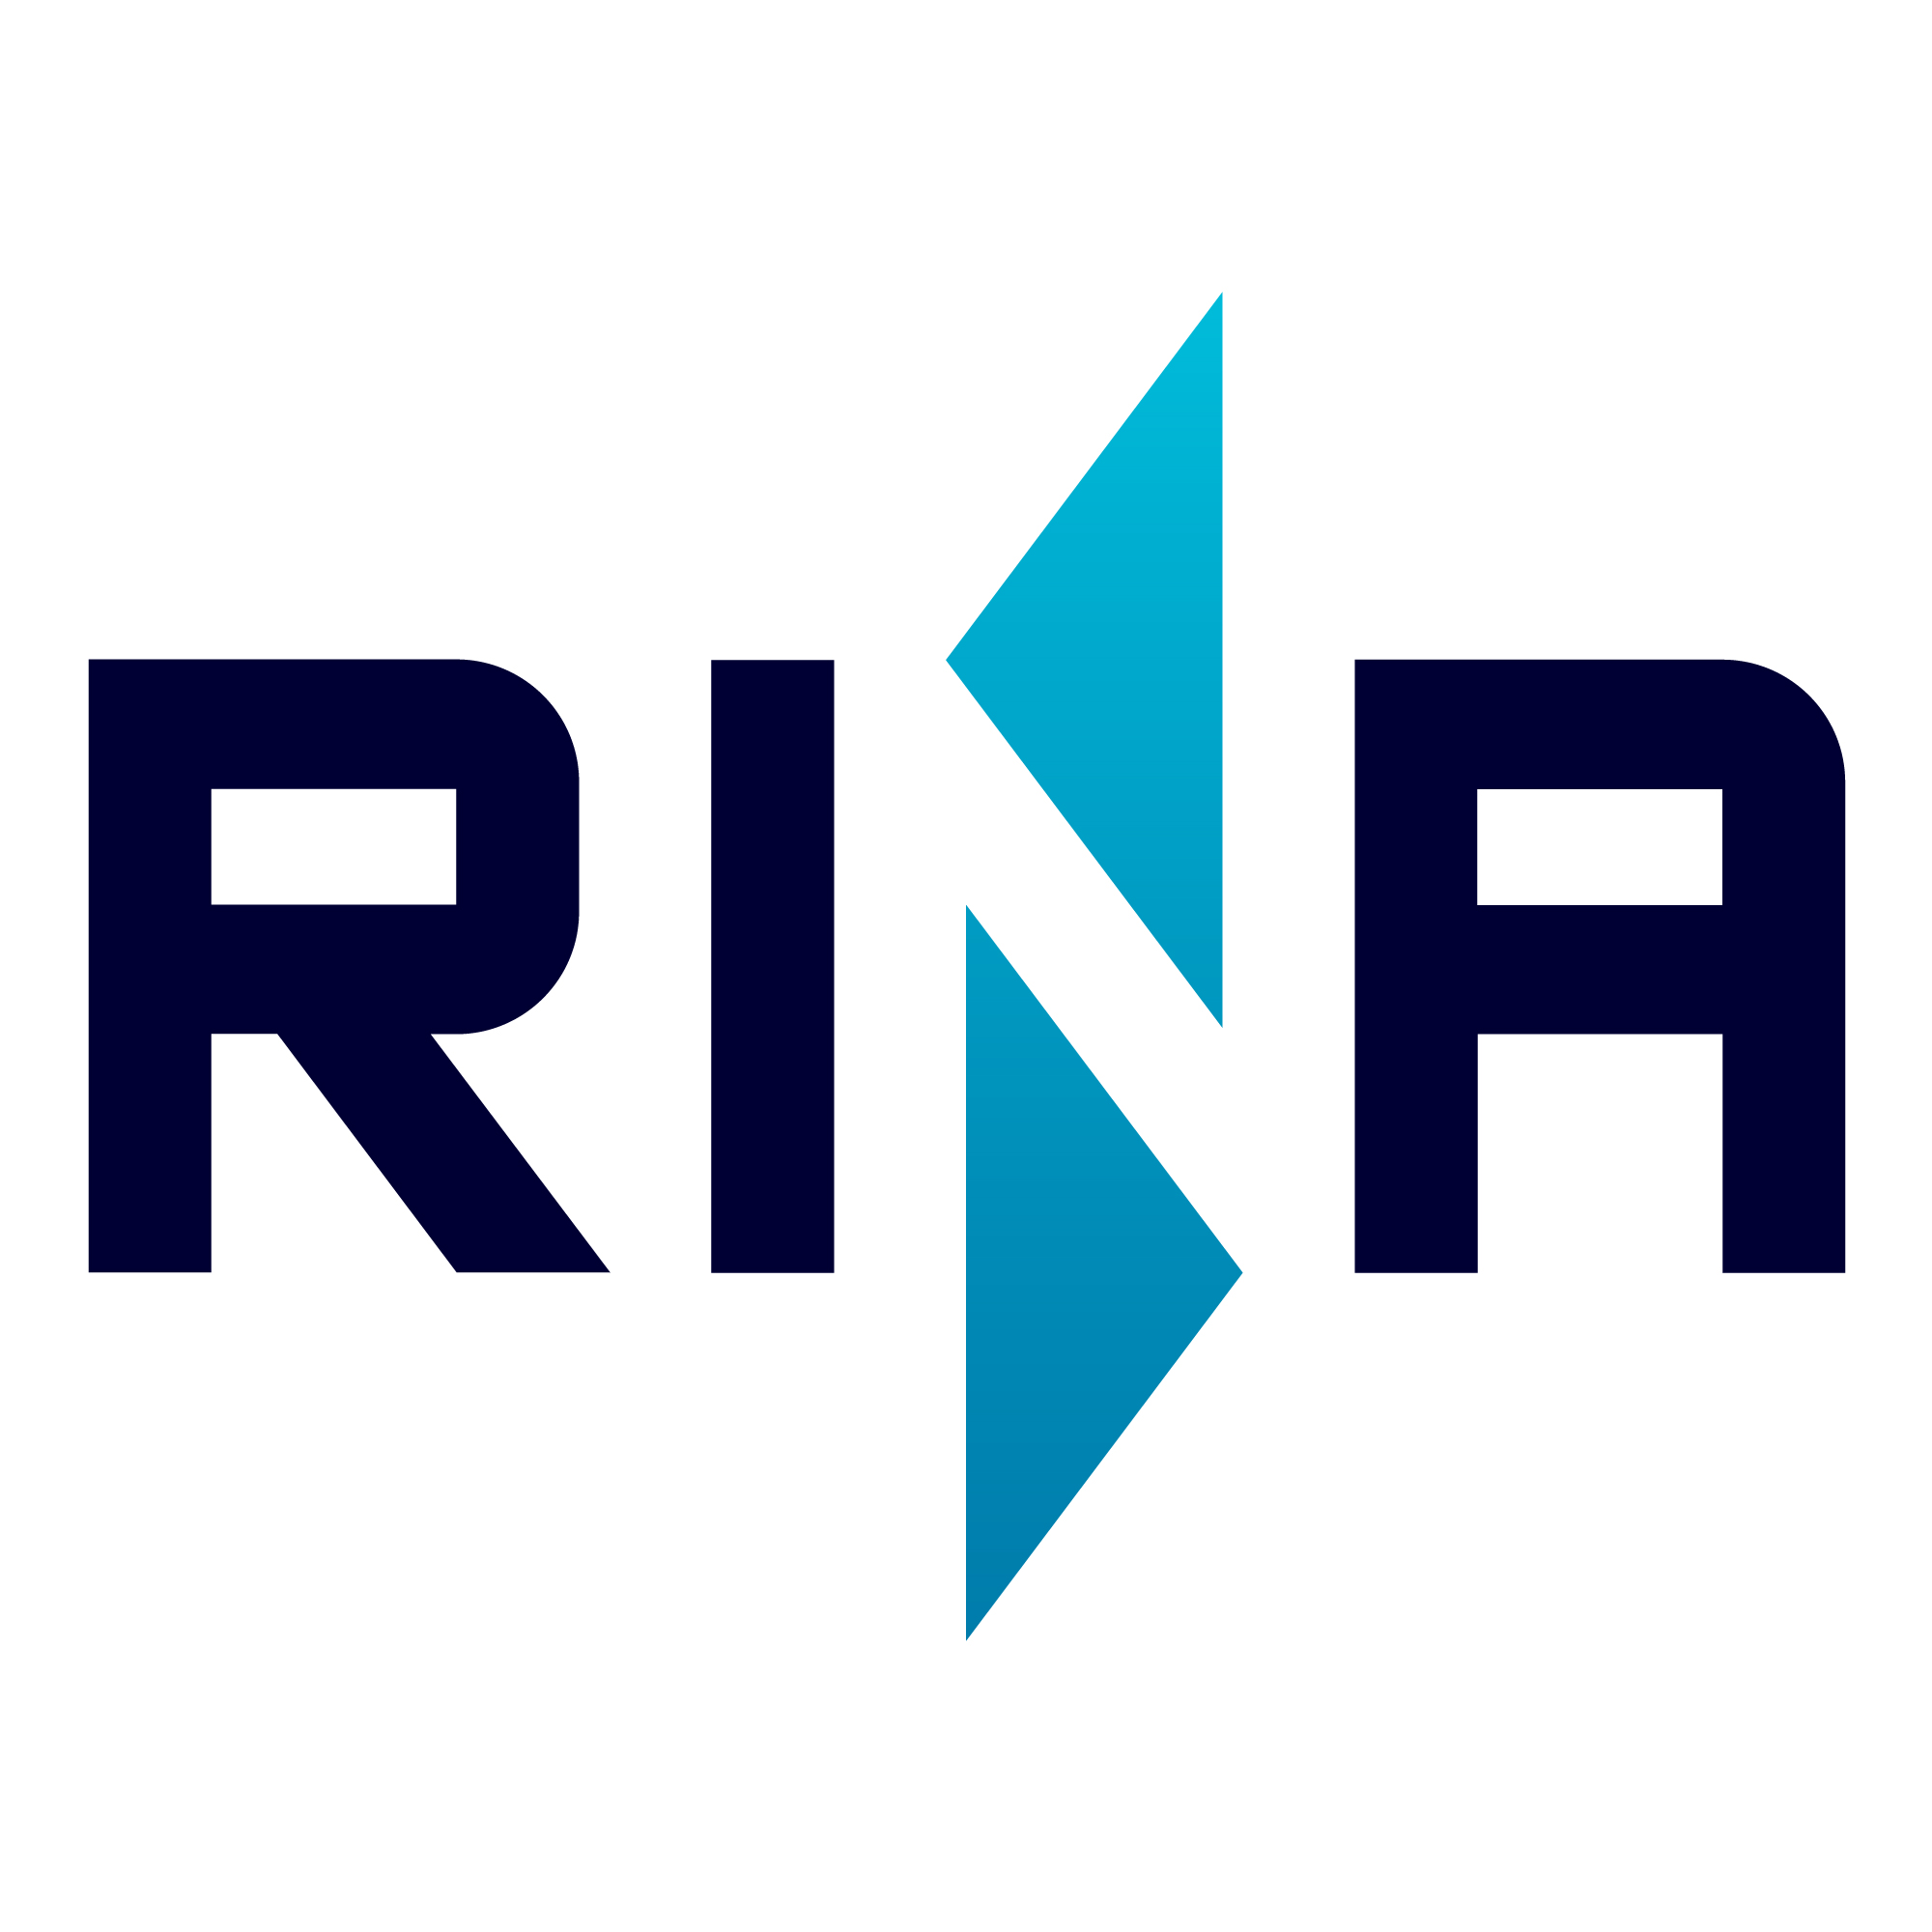 Das Bild zeigt das Logo der Schiffbauklassifikationsgesellschaft RINA